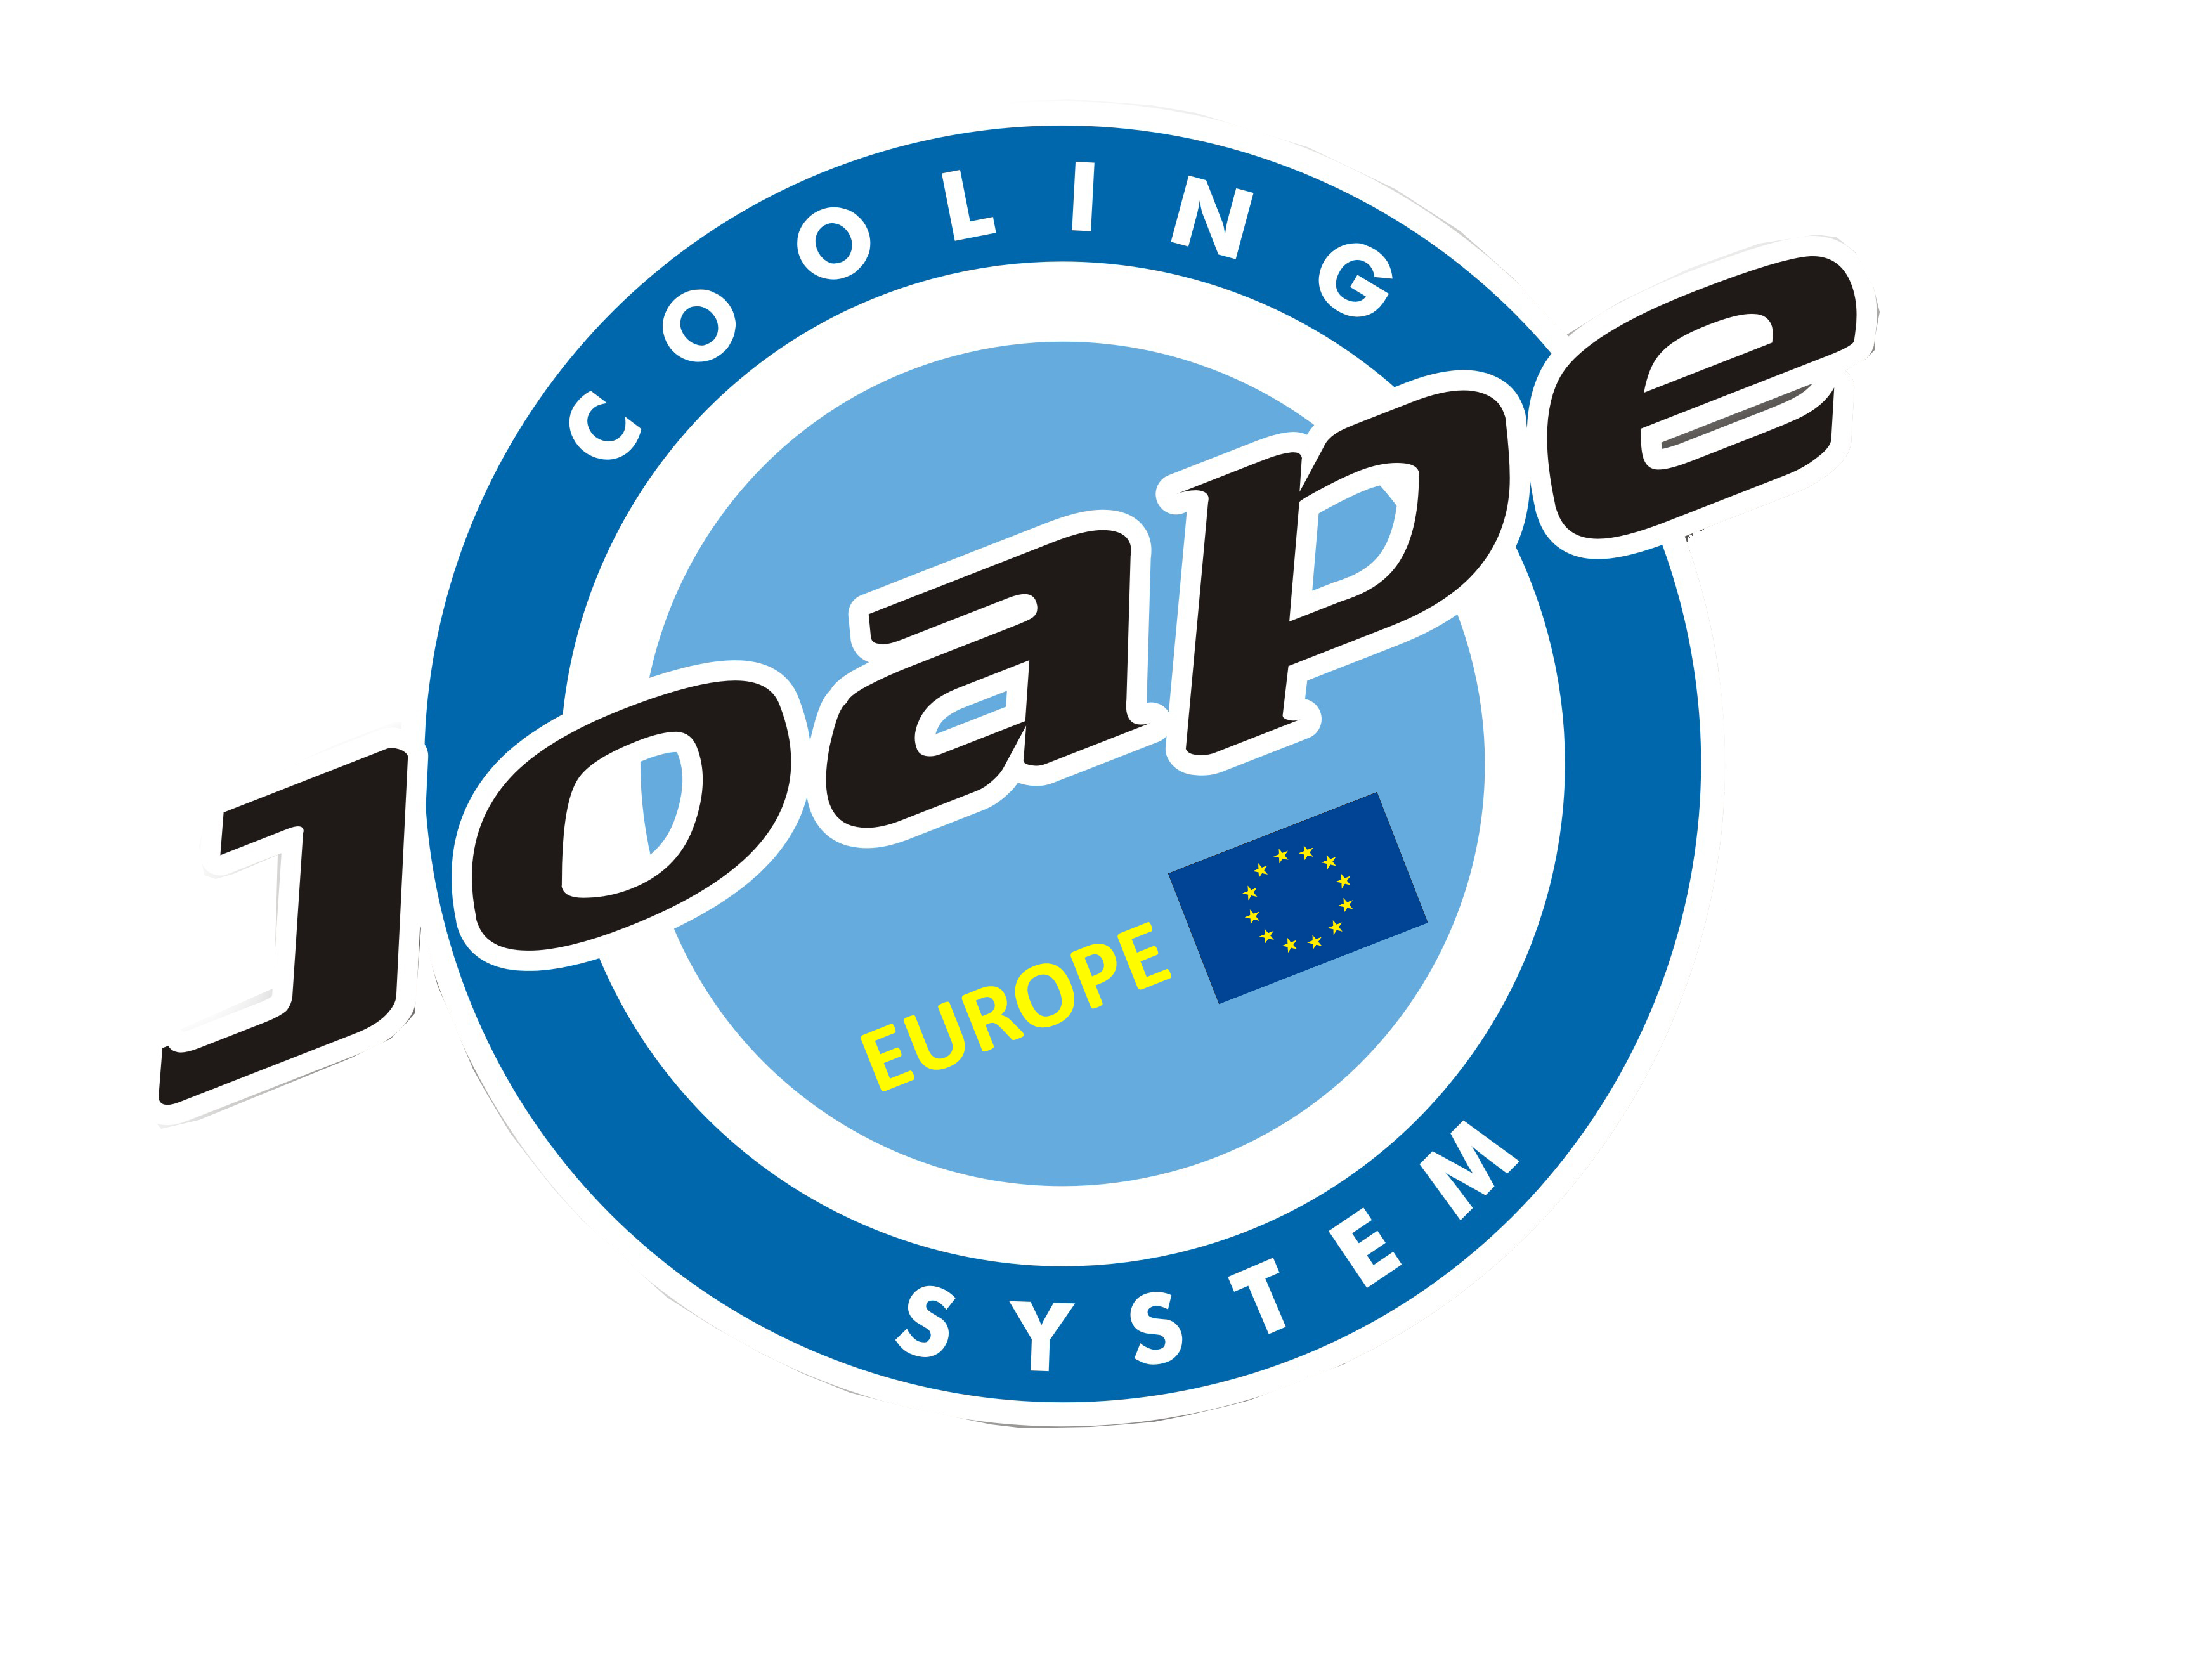 JOAPE-EUROPE